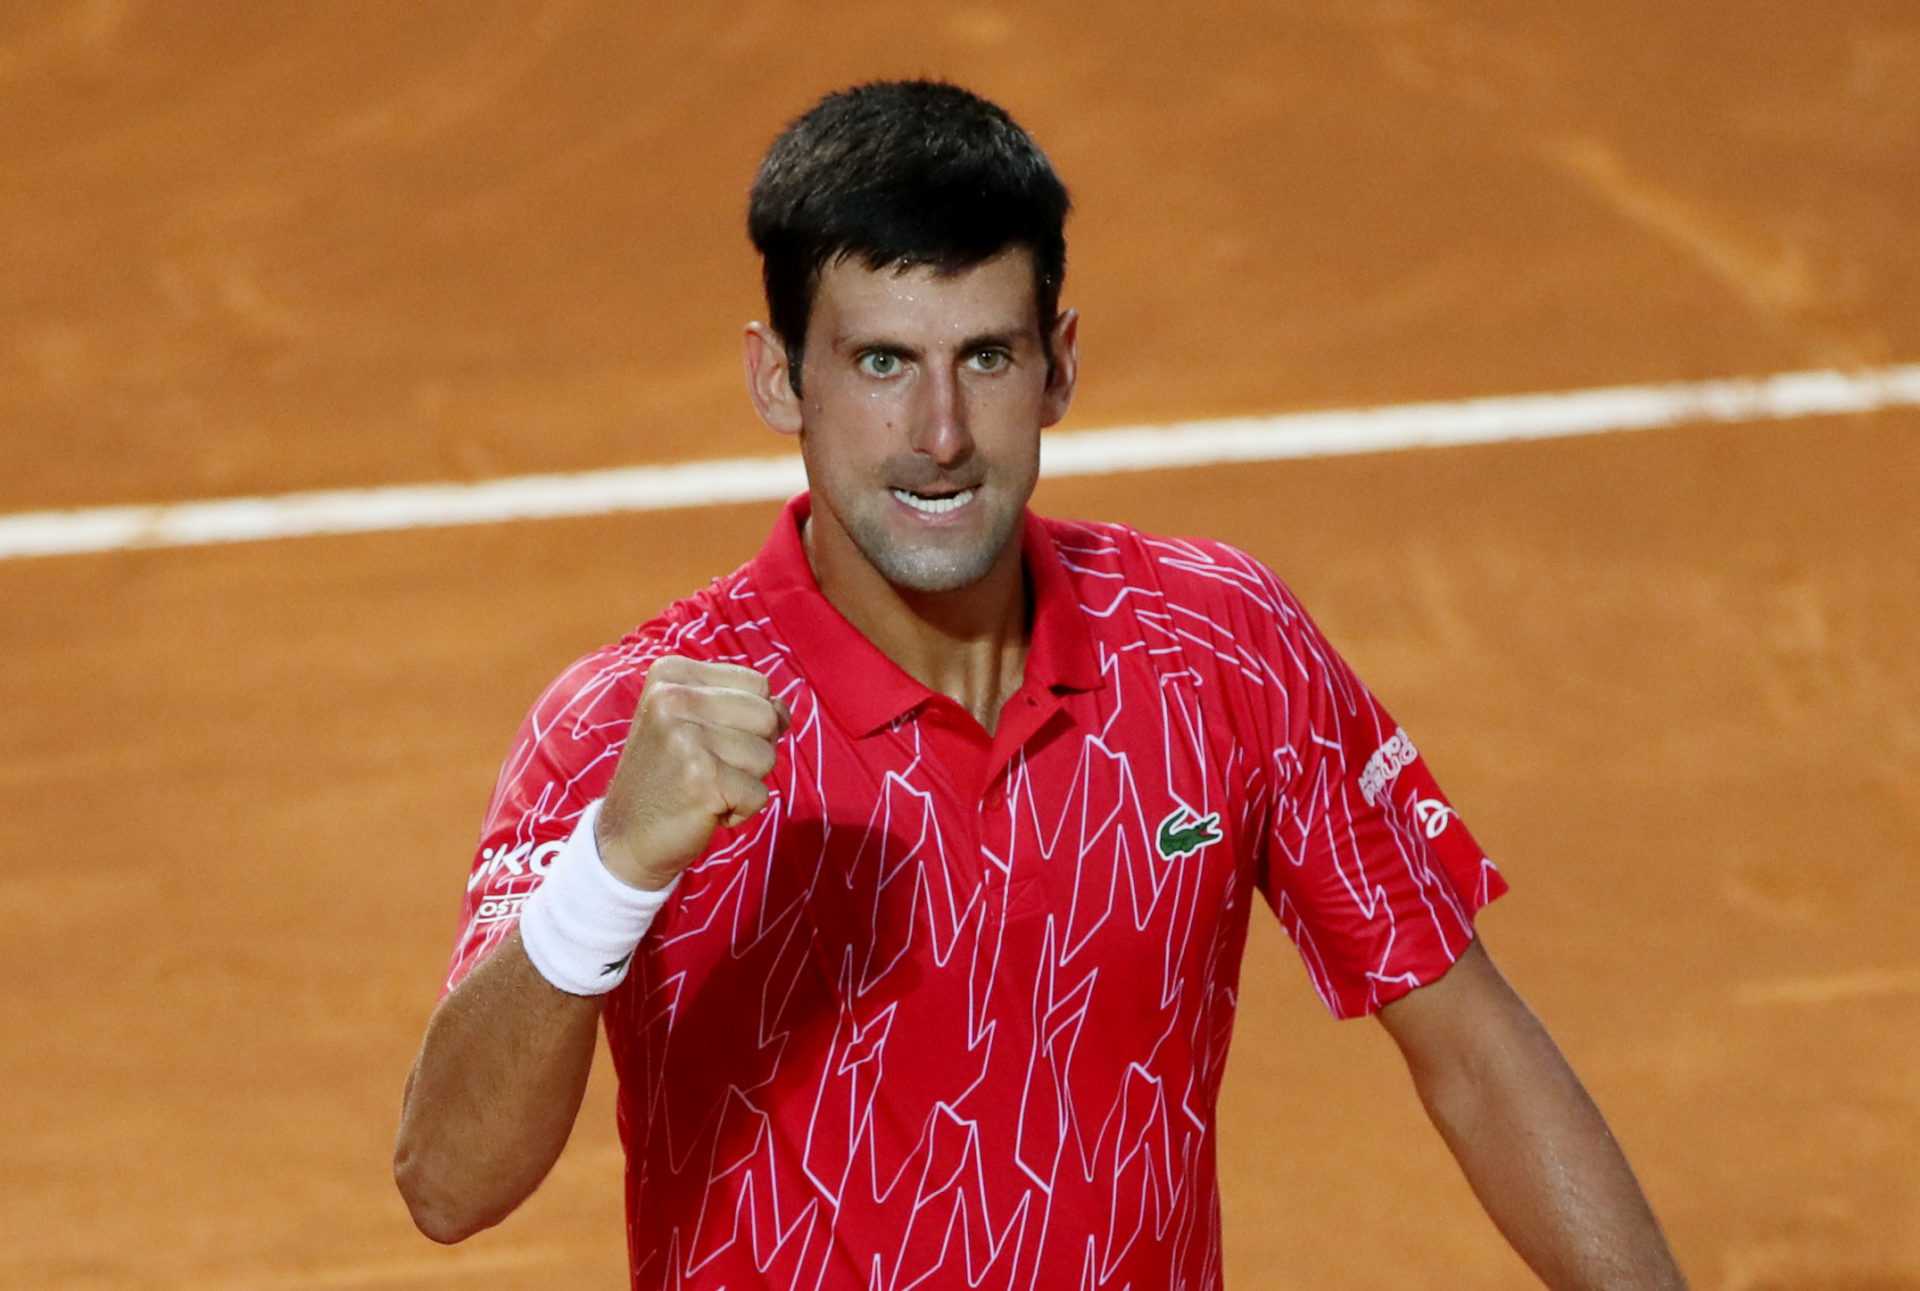 «Battable sur terre battue»: Novak Djokovic prêt à défier Rafael Nadal à Roland-Garros 2020